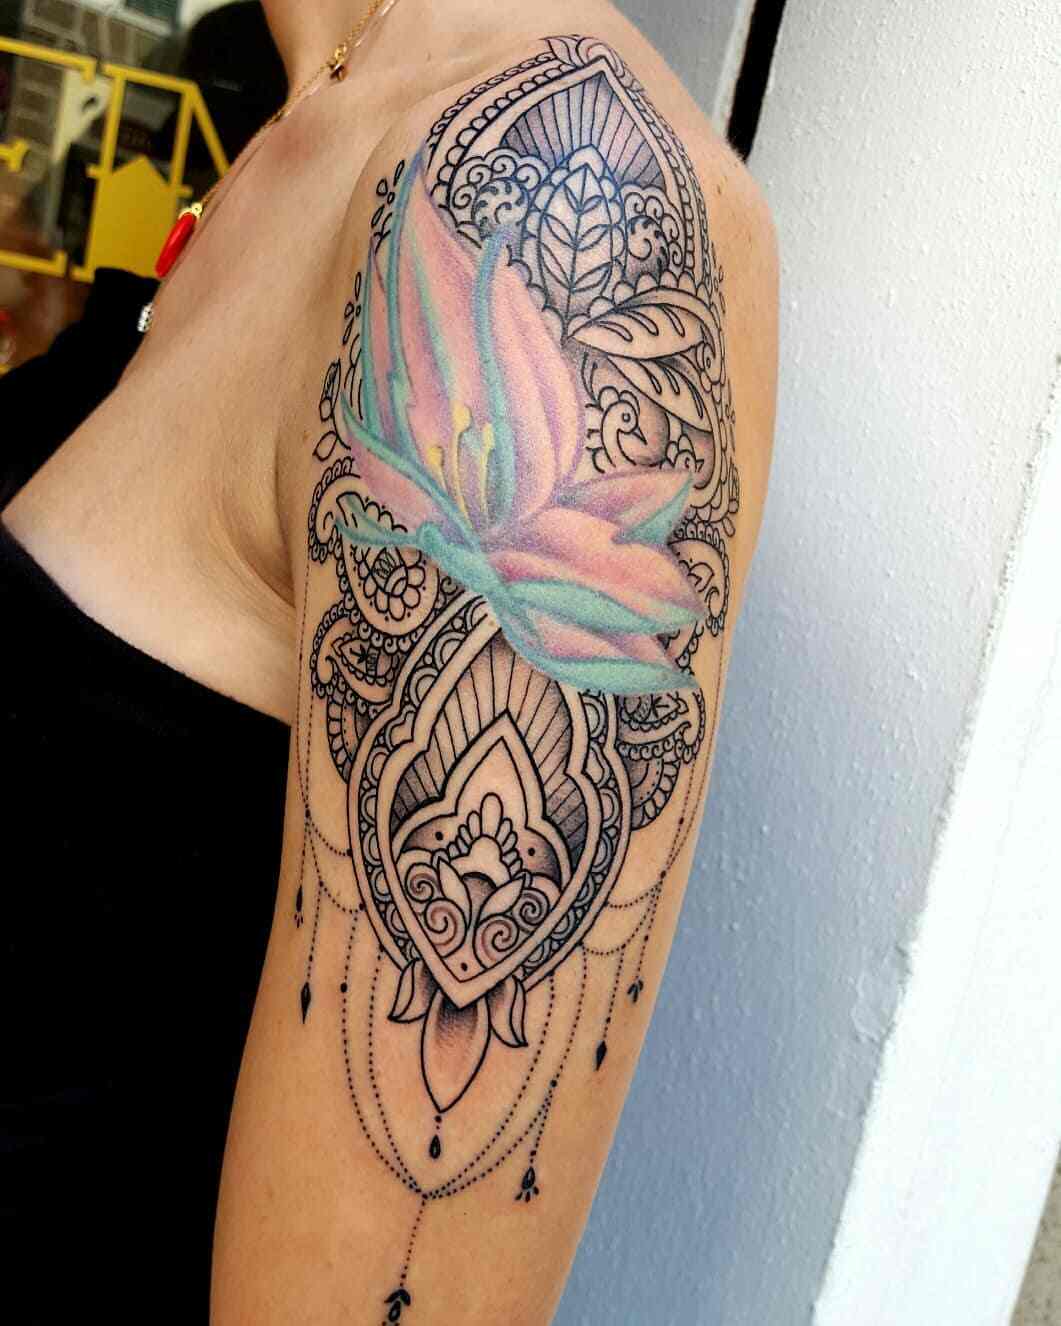 Axel prydnad tatuering lotus blomma mandala tatuering kvinna tatuering design